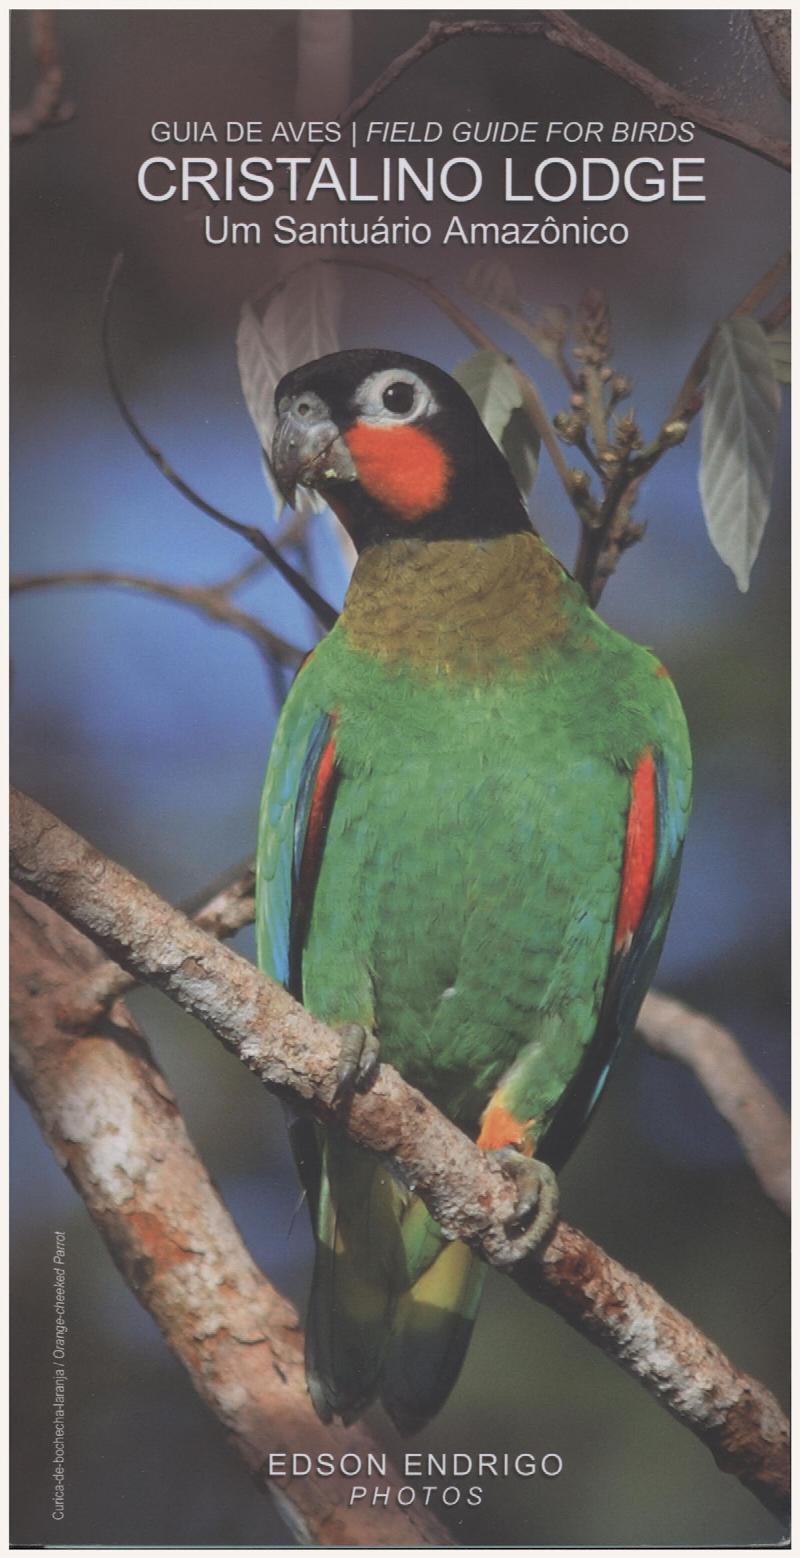 Image for Guia de Aves, Field Guide for Birds: Cristalino Lodge, Um Santuario Amazonico